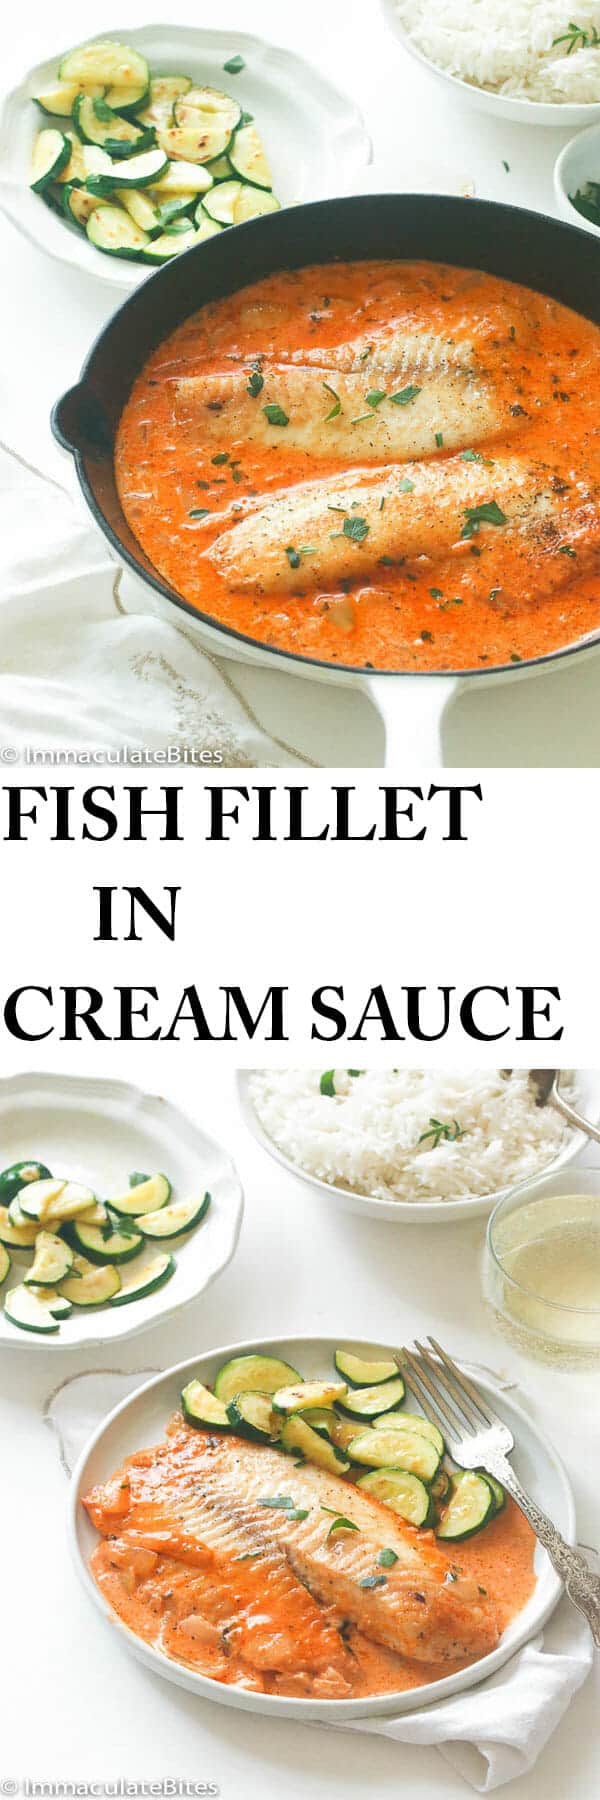 Fish Fillet in cream sauce